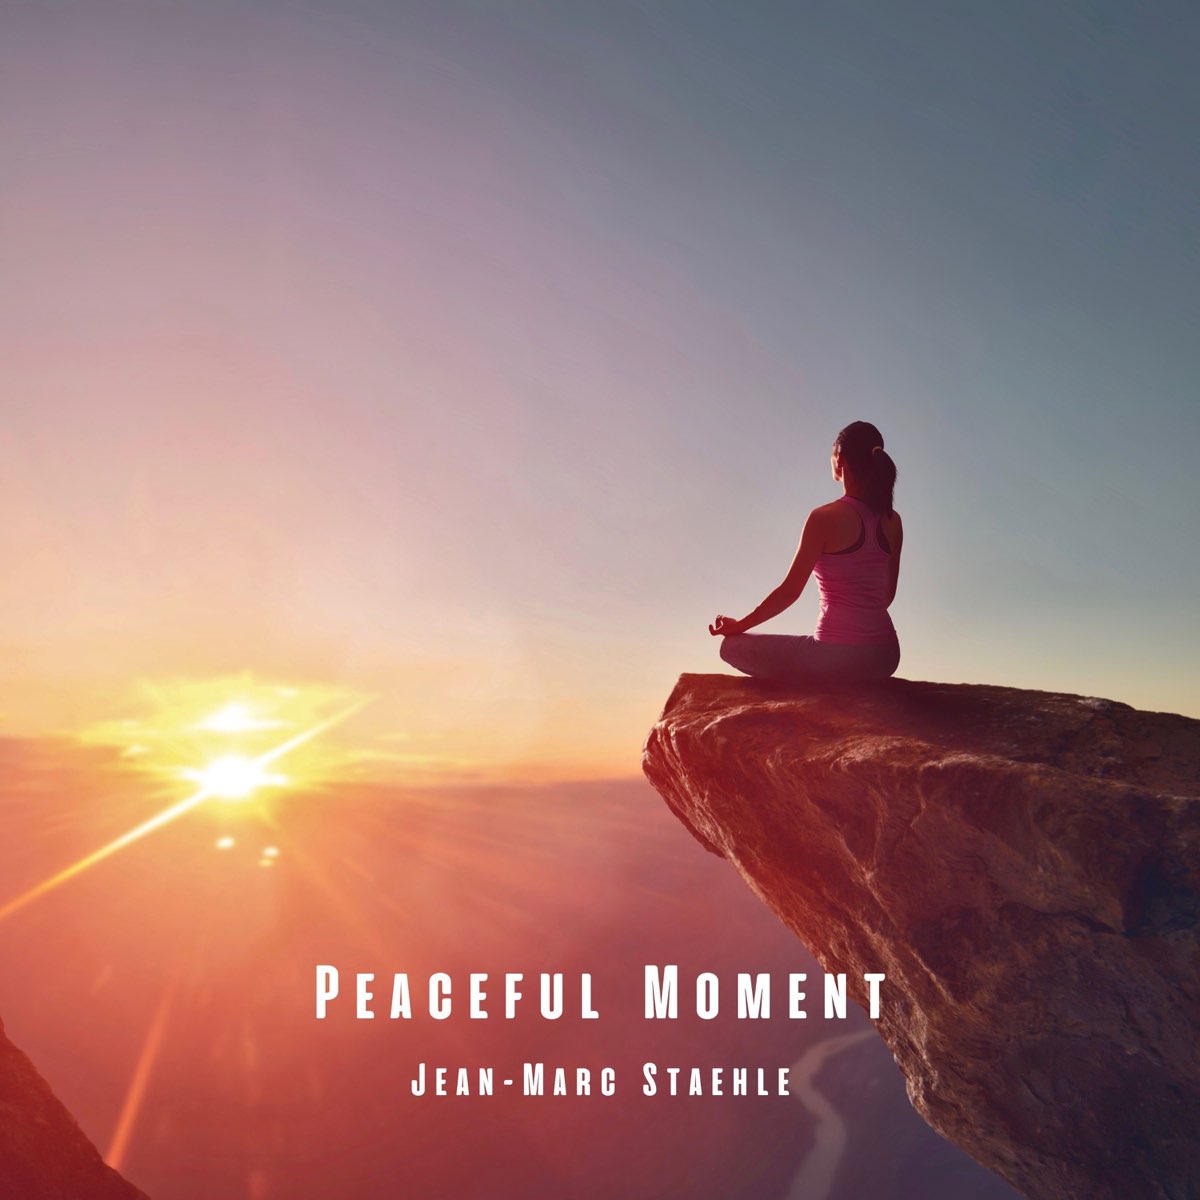 Peaceful Moment - Single par Jean-Marc Staehle sur Apple Music